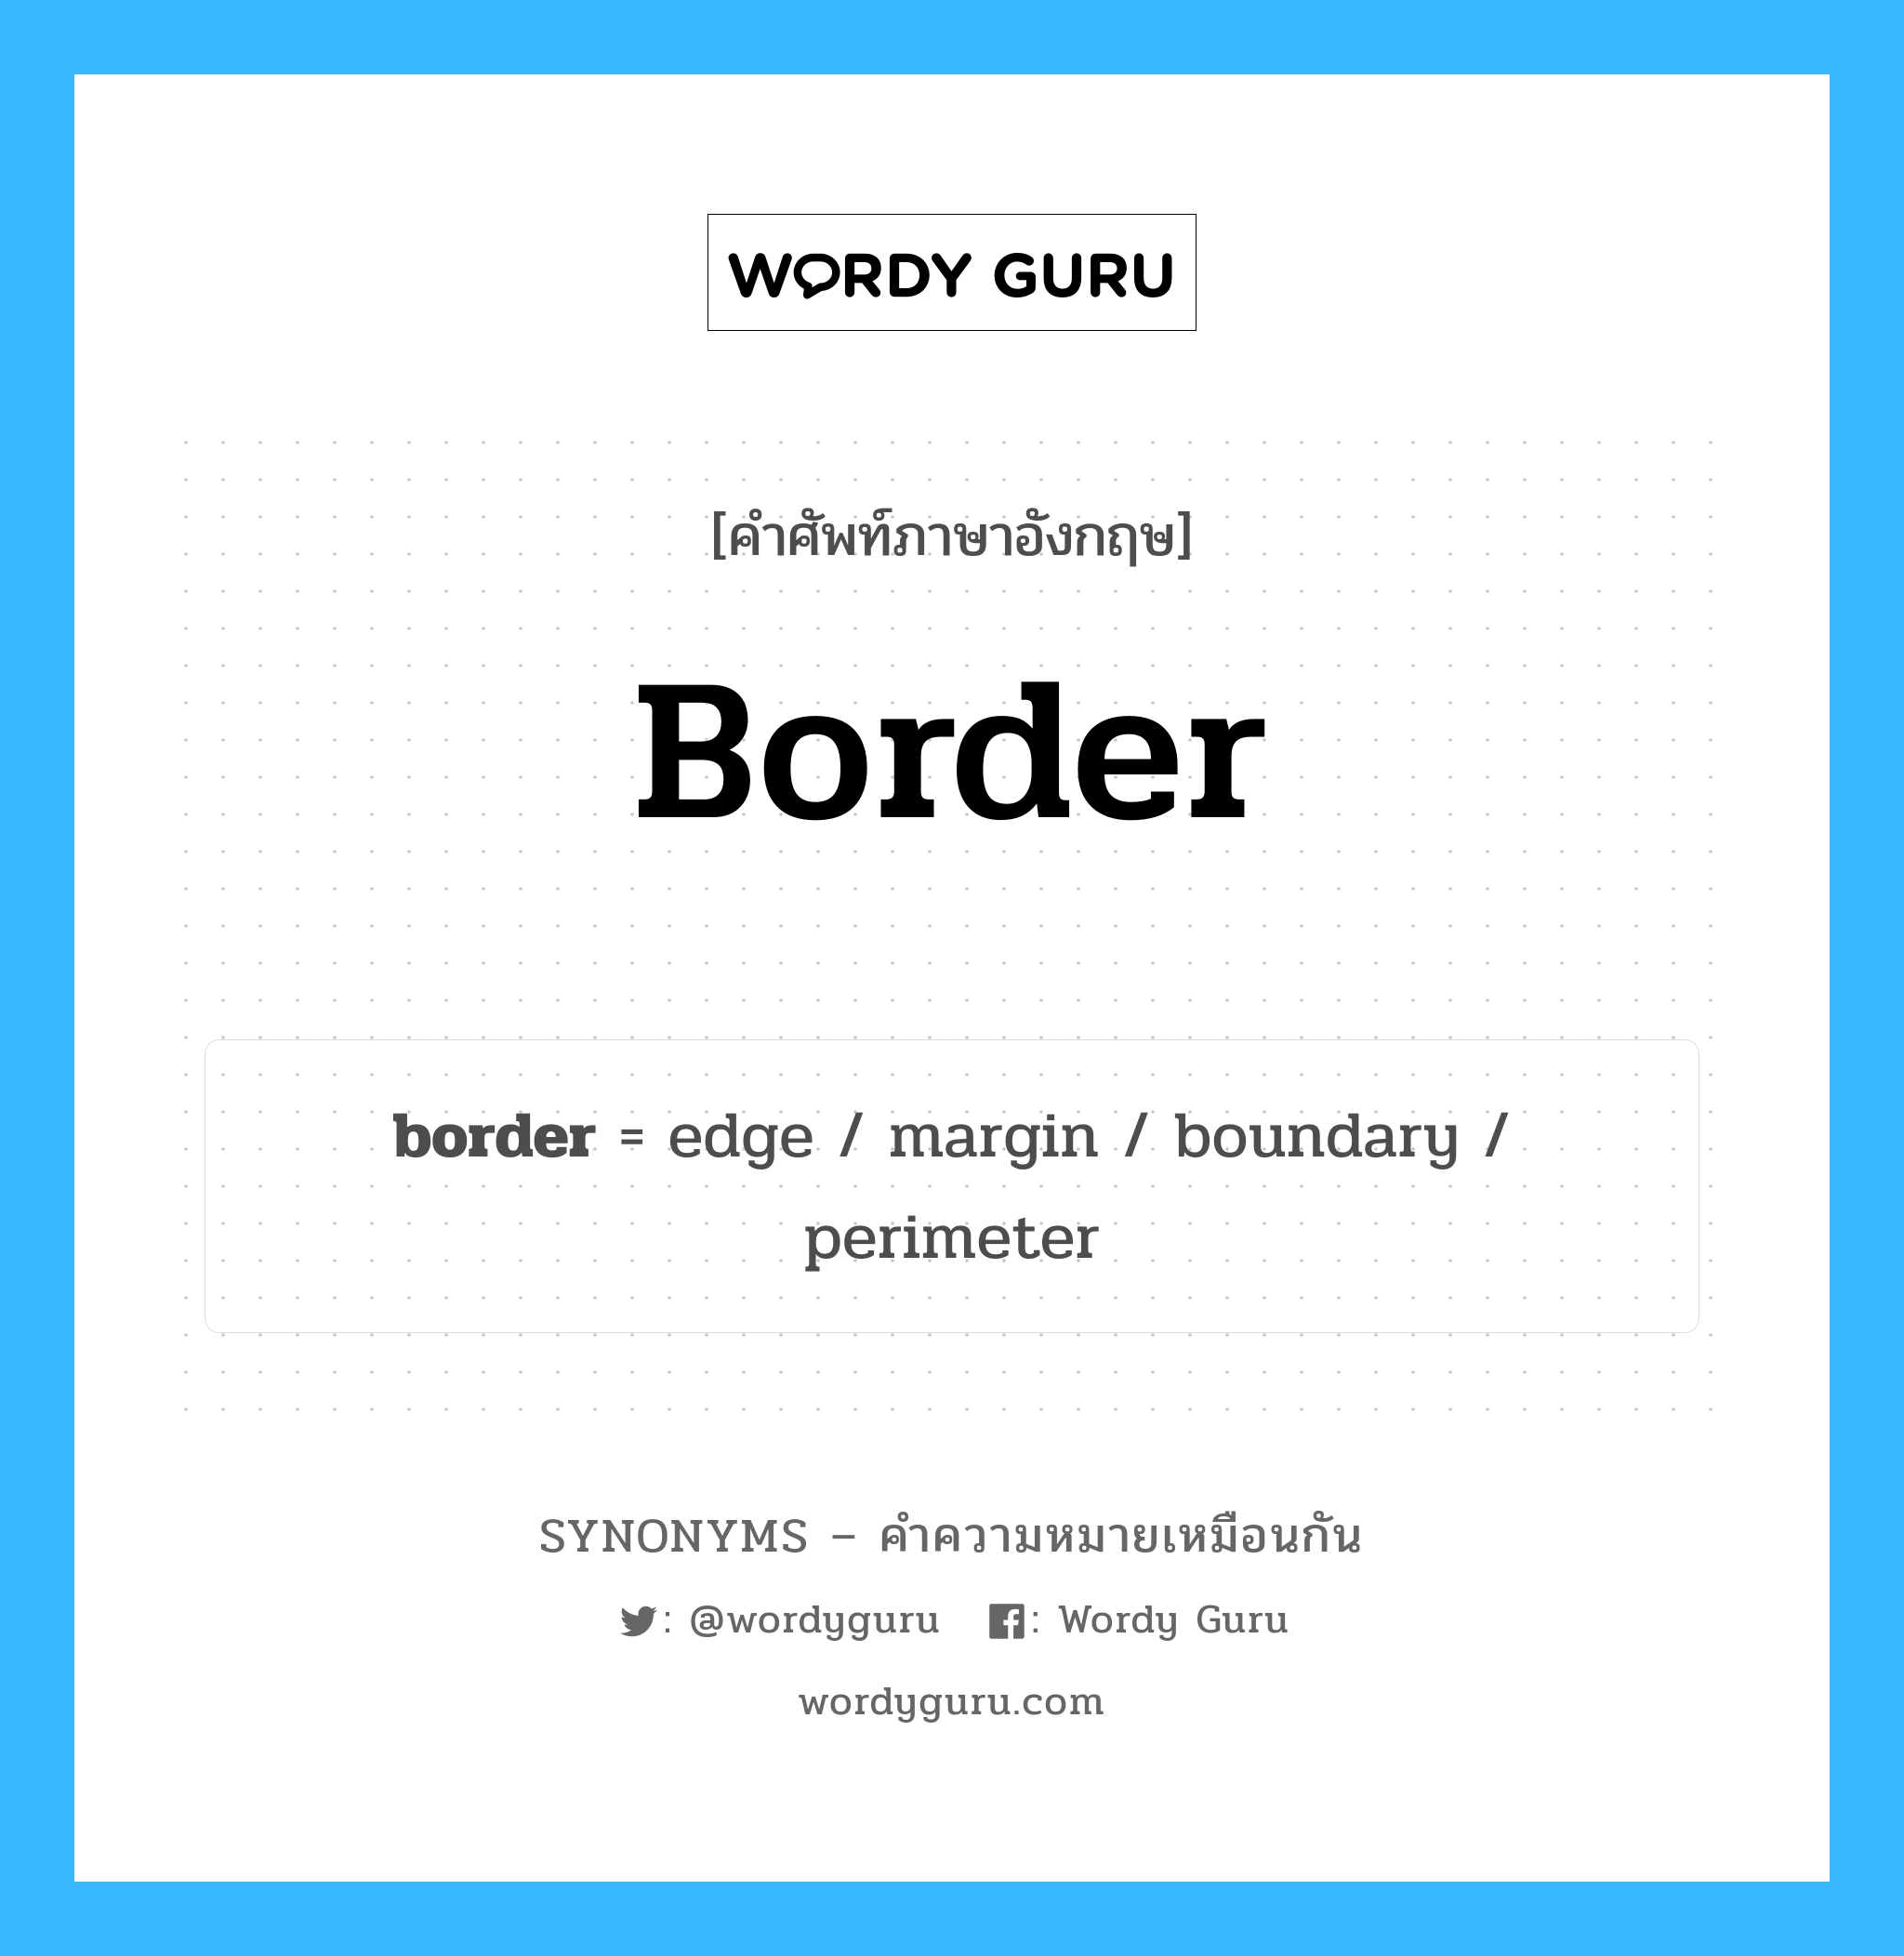 border เป็นหนึ่งใน boundary และมีคำอื่น ๆ อีกดังนี้, คำศัพท์ภาษาอังกฤษ border ความหมายคล้ายกันกับ boundary แปลว่า ขอบเขต หมวด boundary